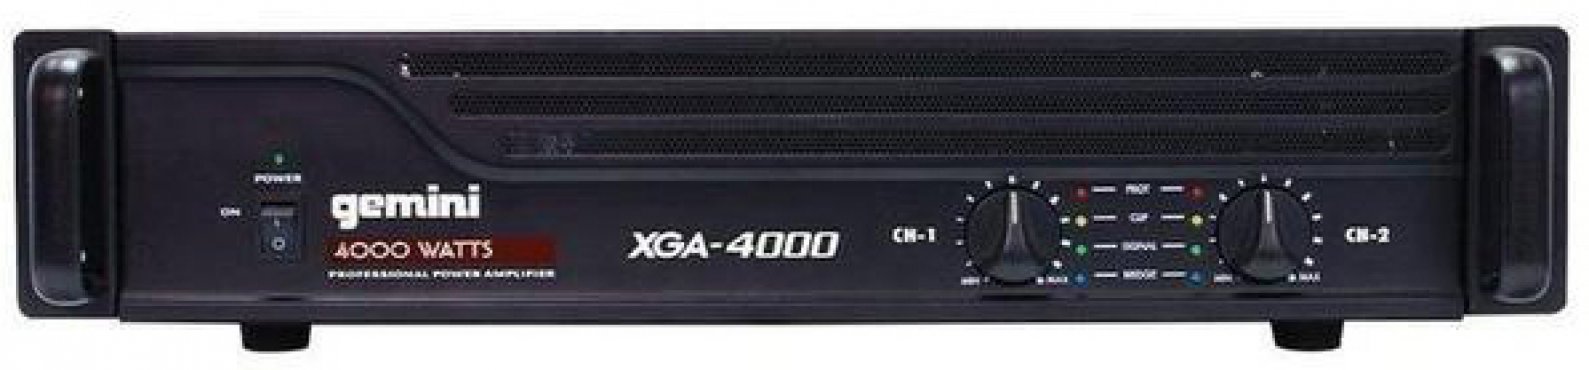 Gemini XGA-4000